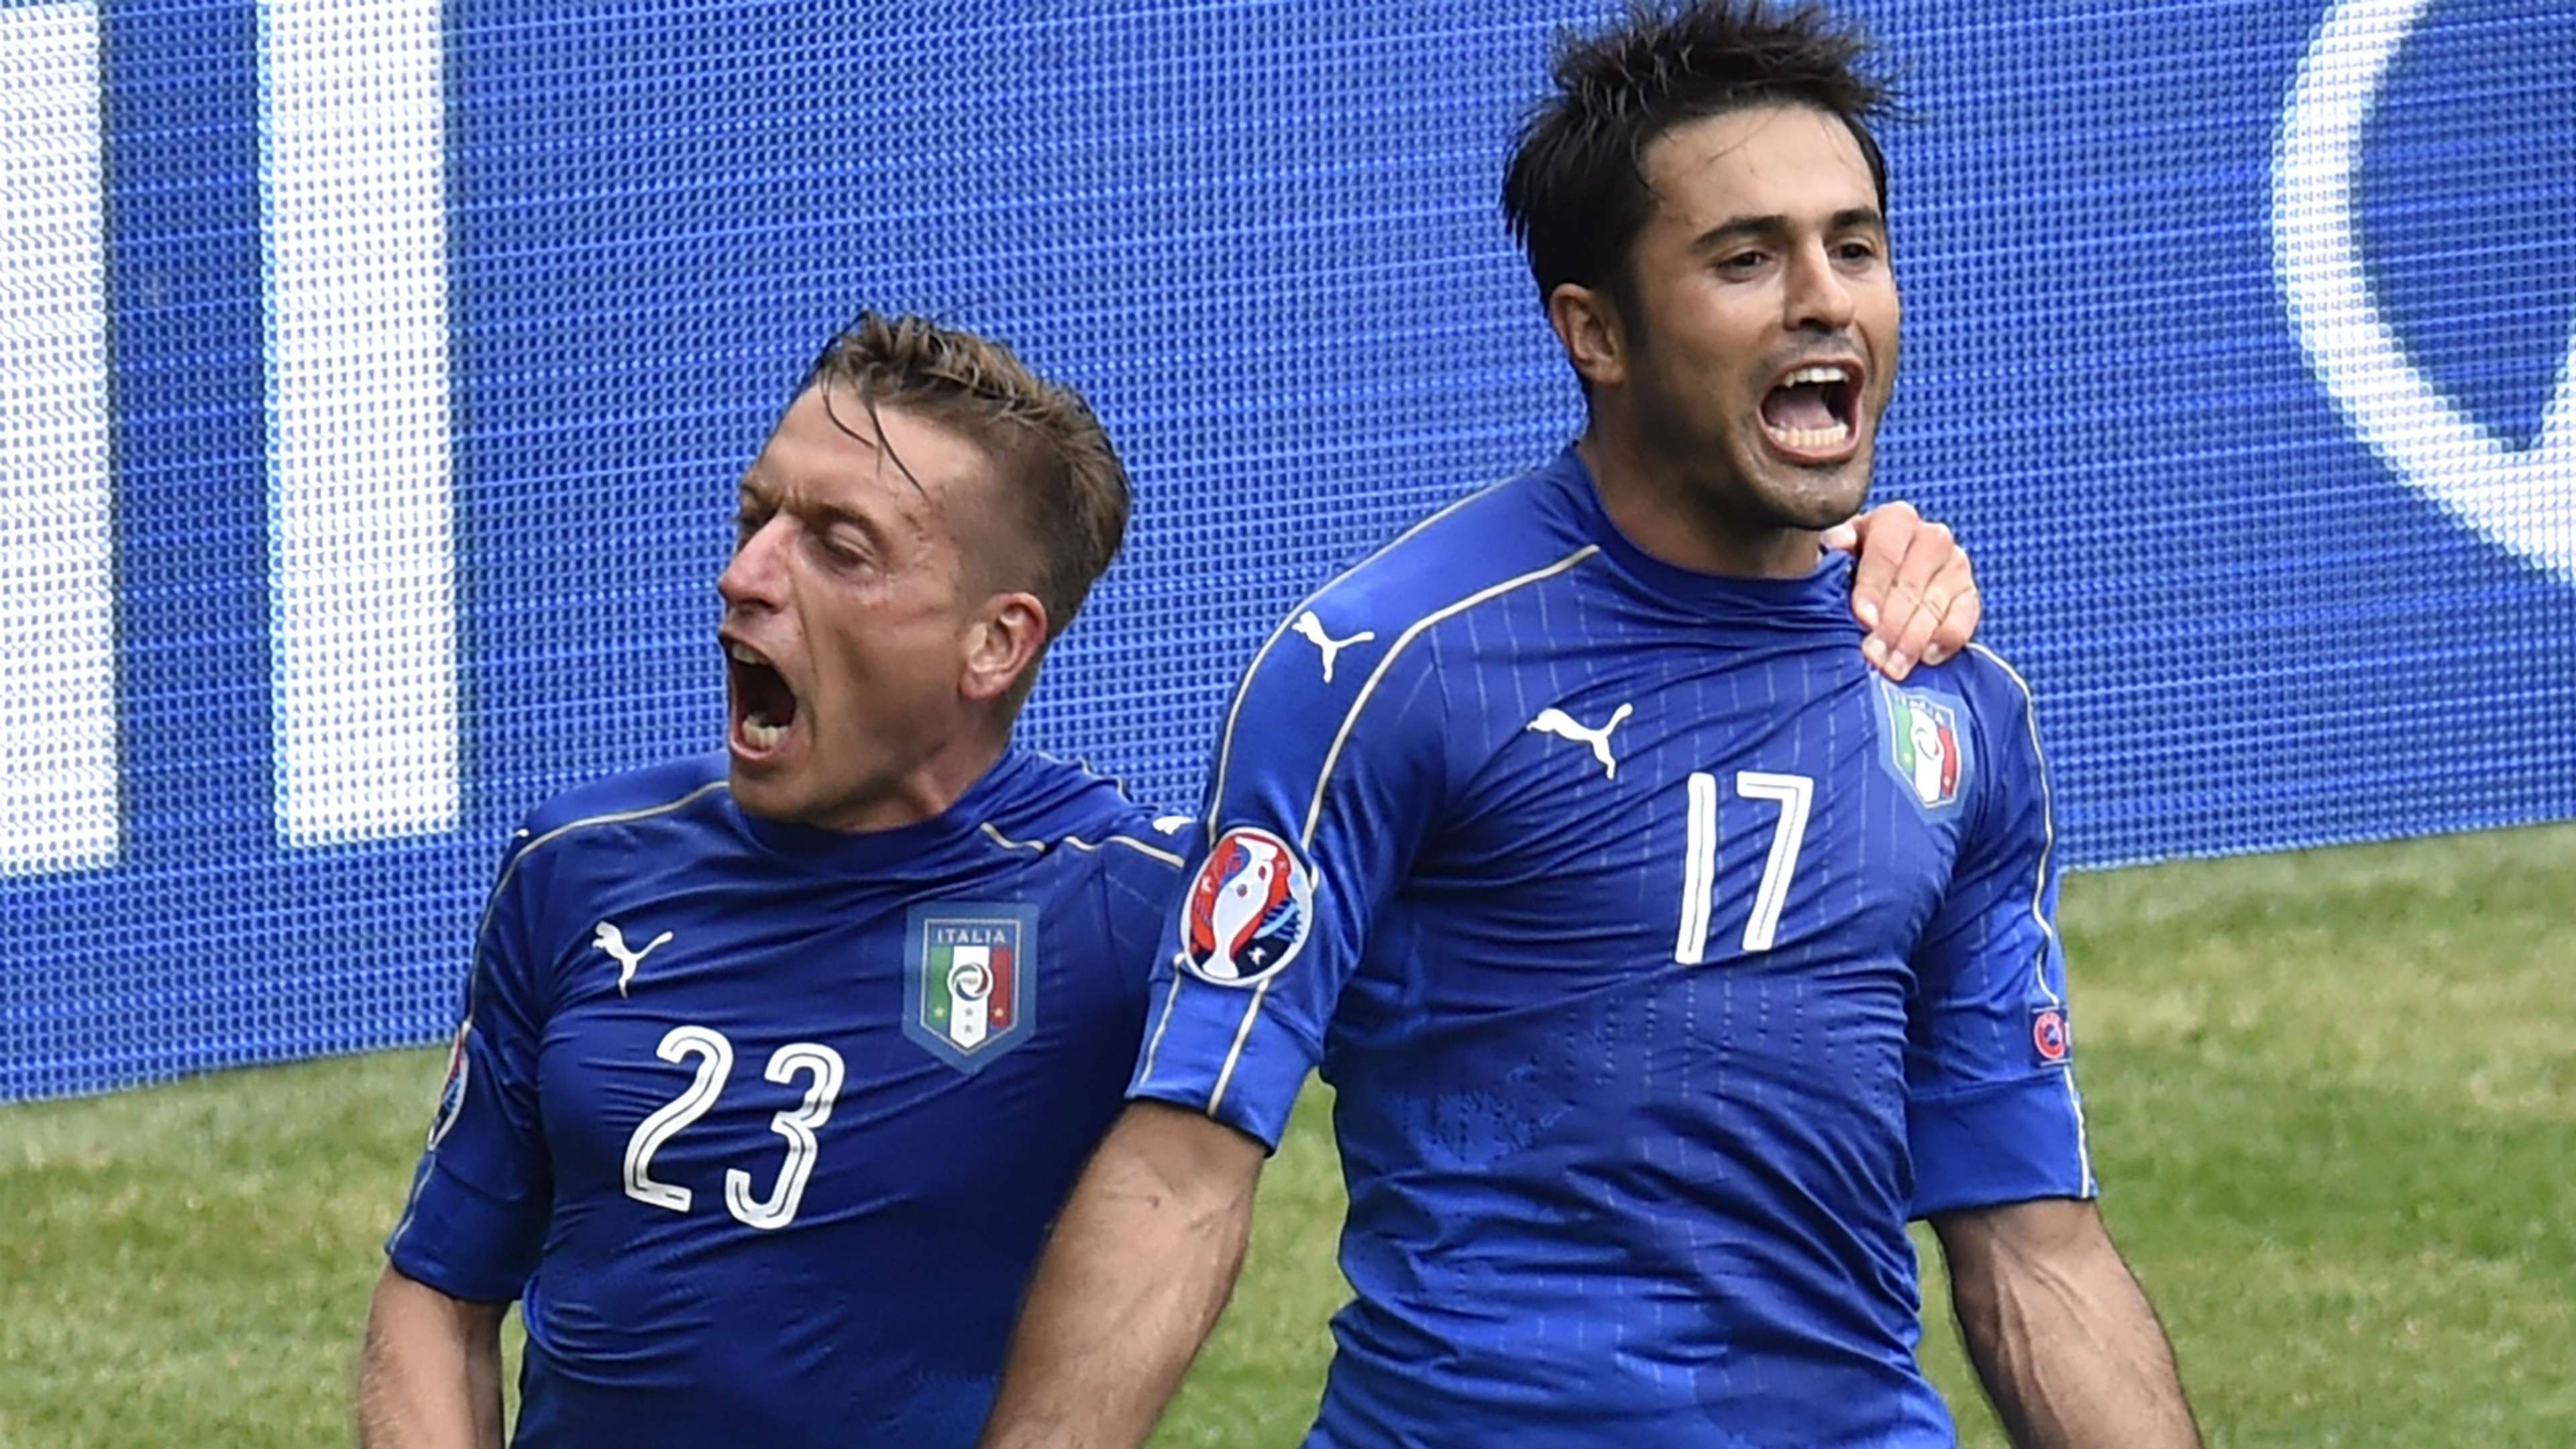 Giaccherini Eder Italy Sweden Euro 2016 06172016